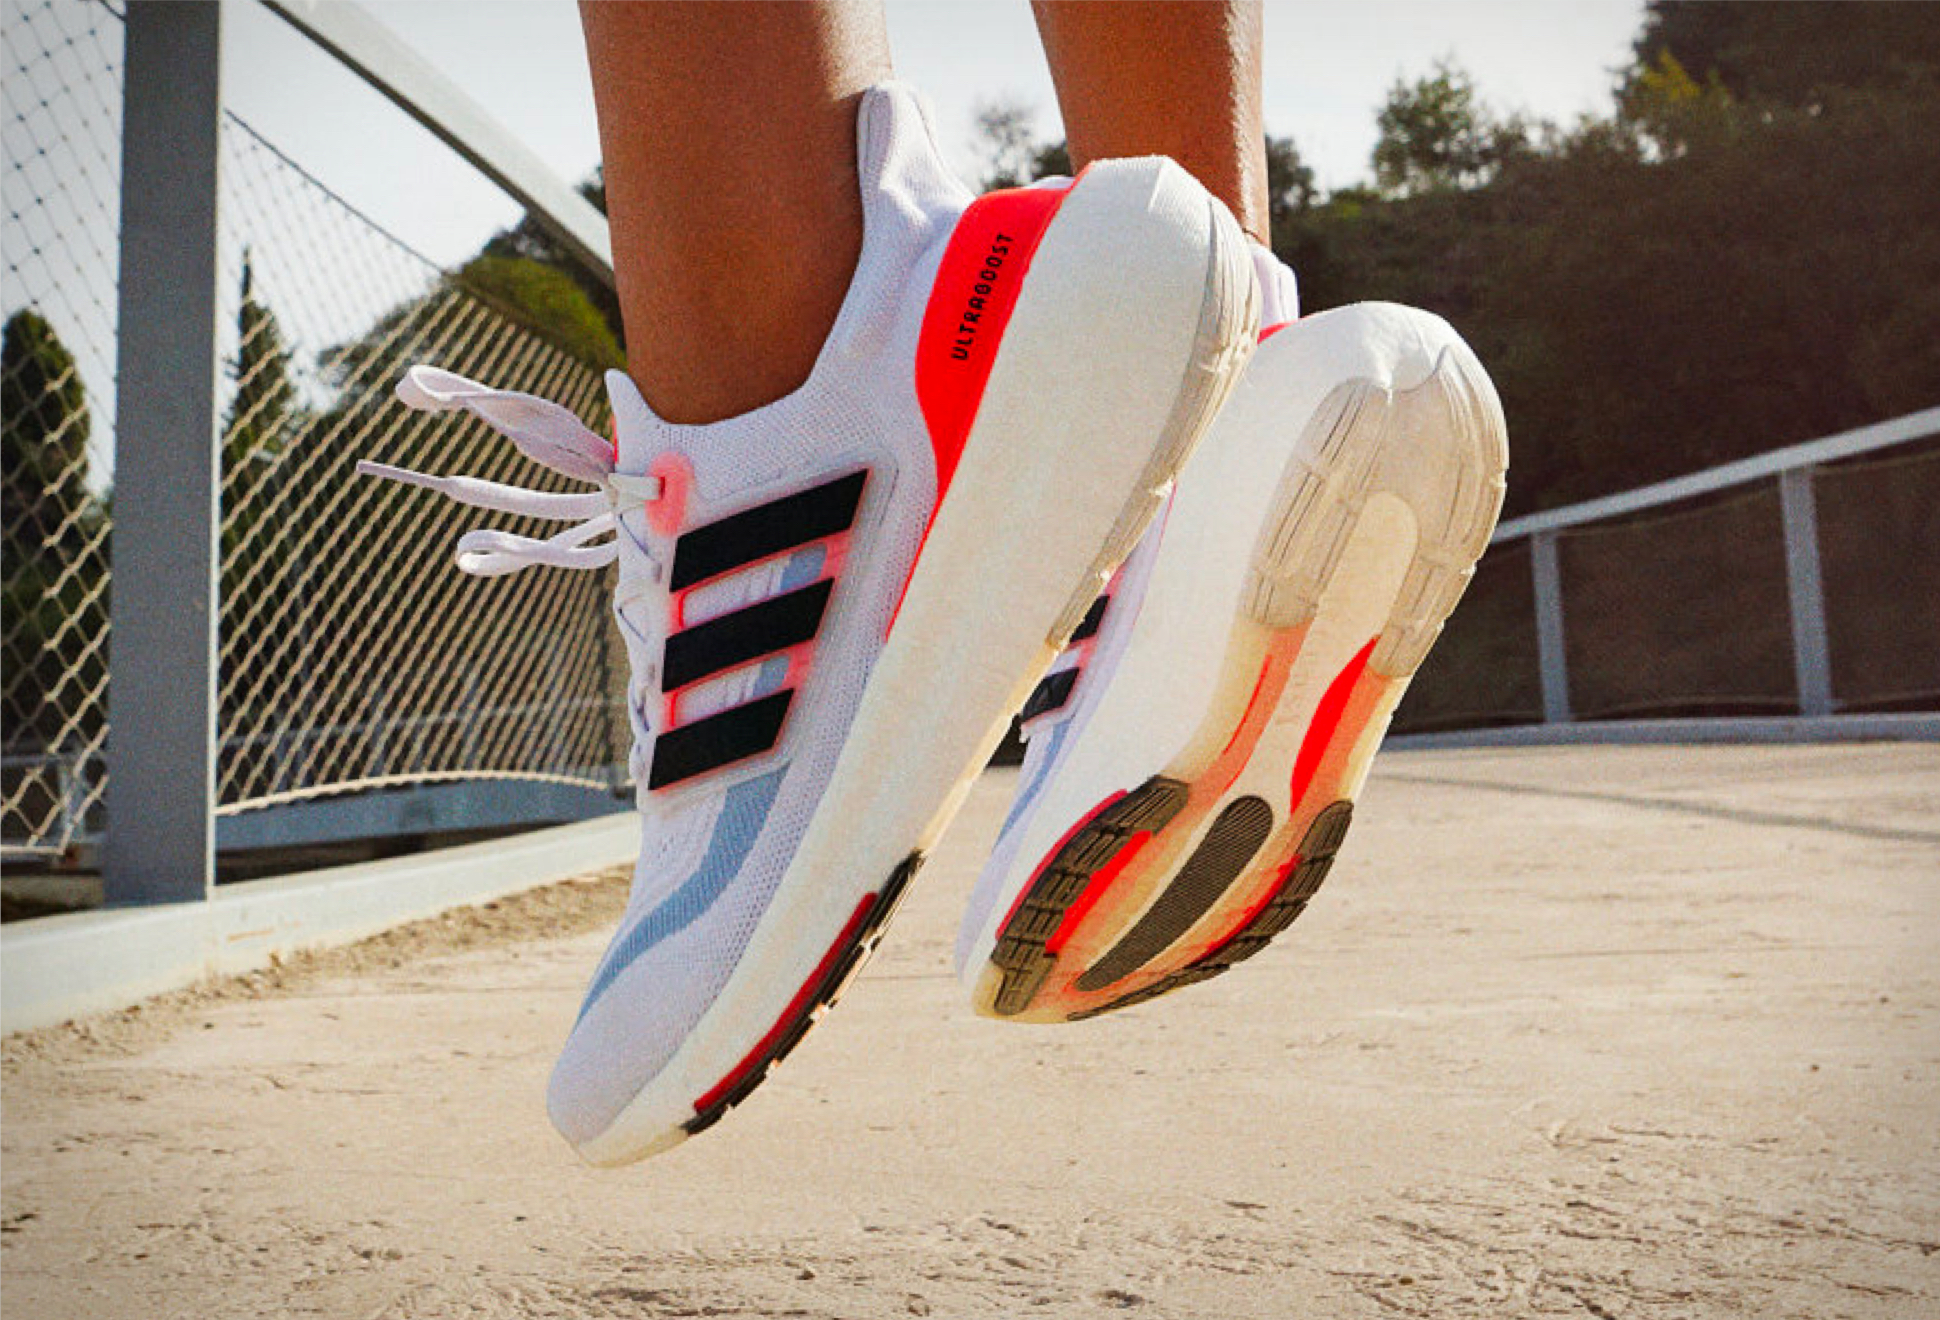 Adidas Ultraboost Light Shoes: O Tênis Perfeito Para O Seu Estilo De Vida Ativo | Image